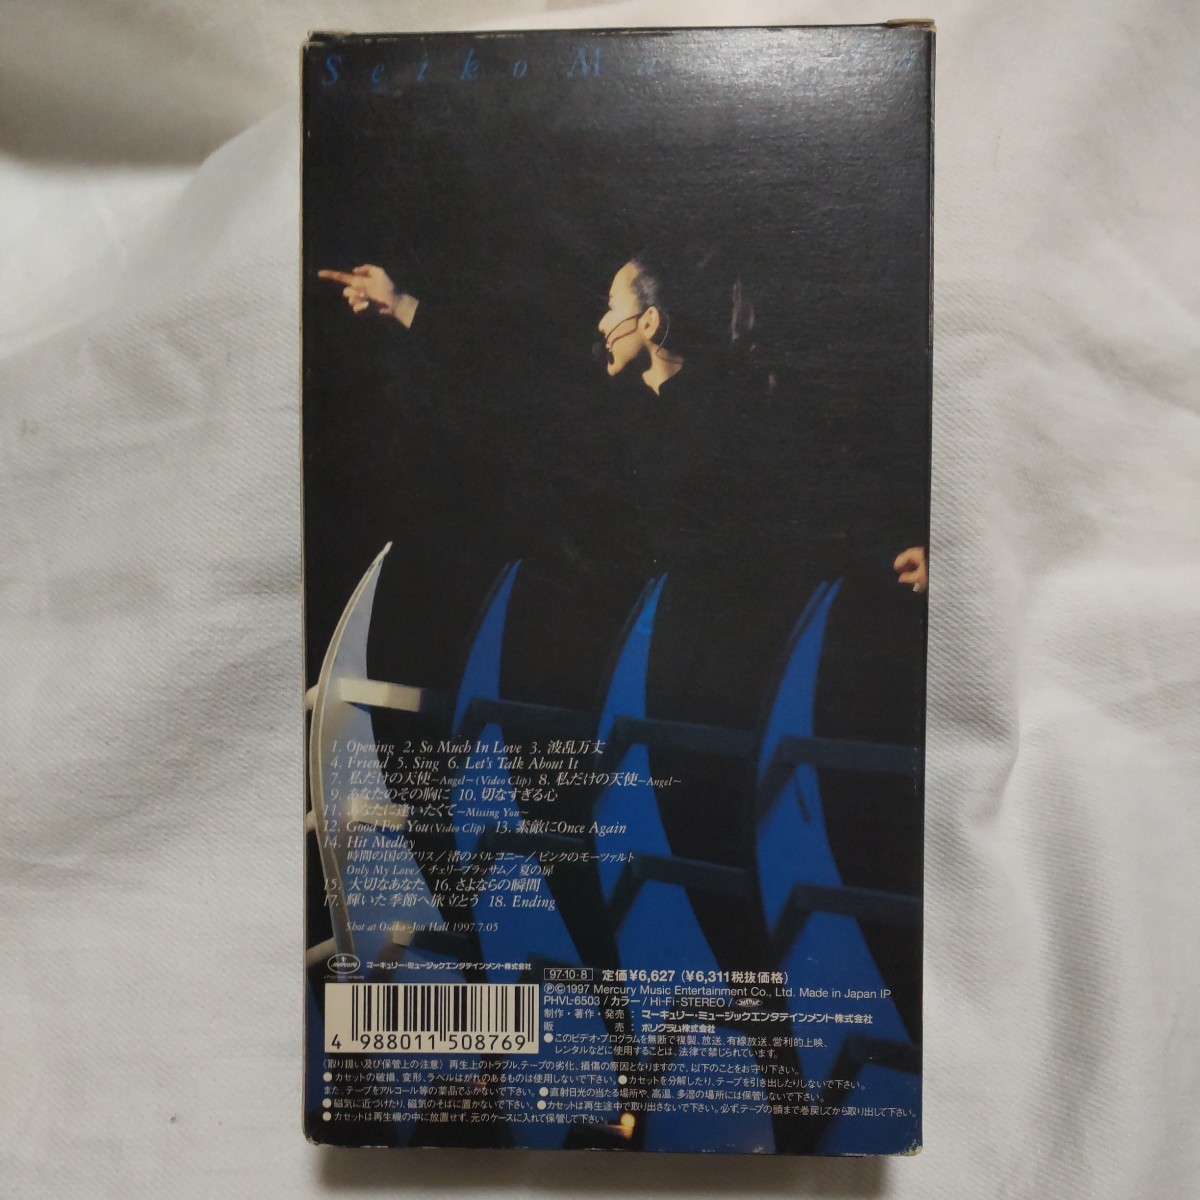 松田聖子 VHSビデオ Seiko Live'97 歌詞カード付き item details